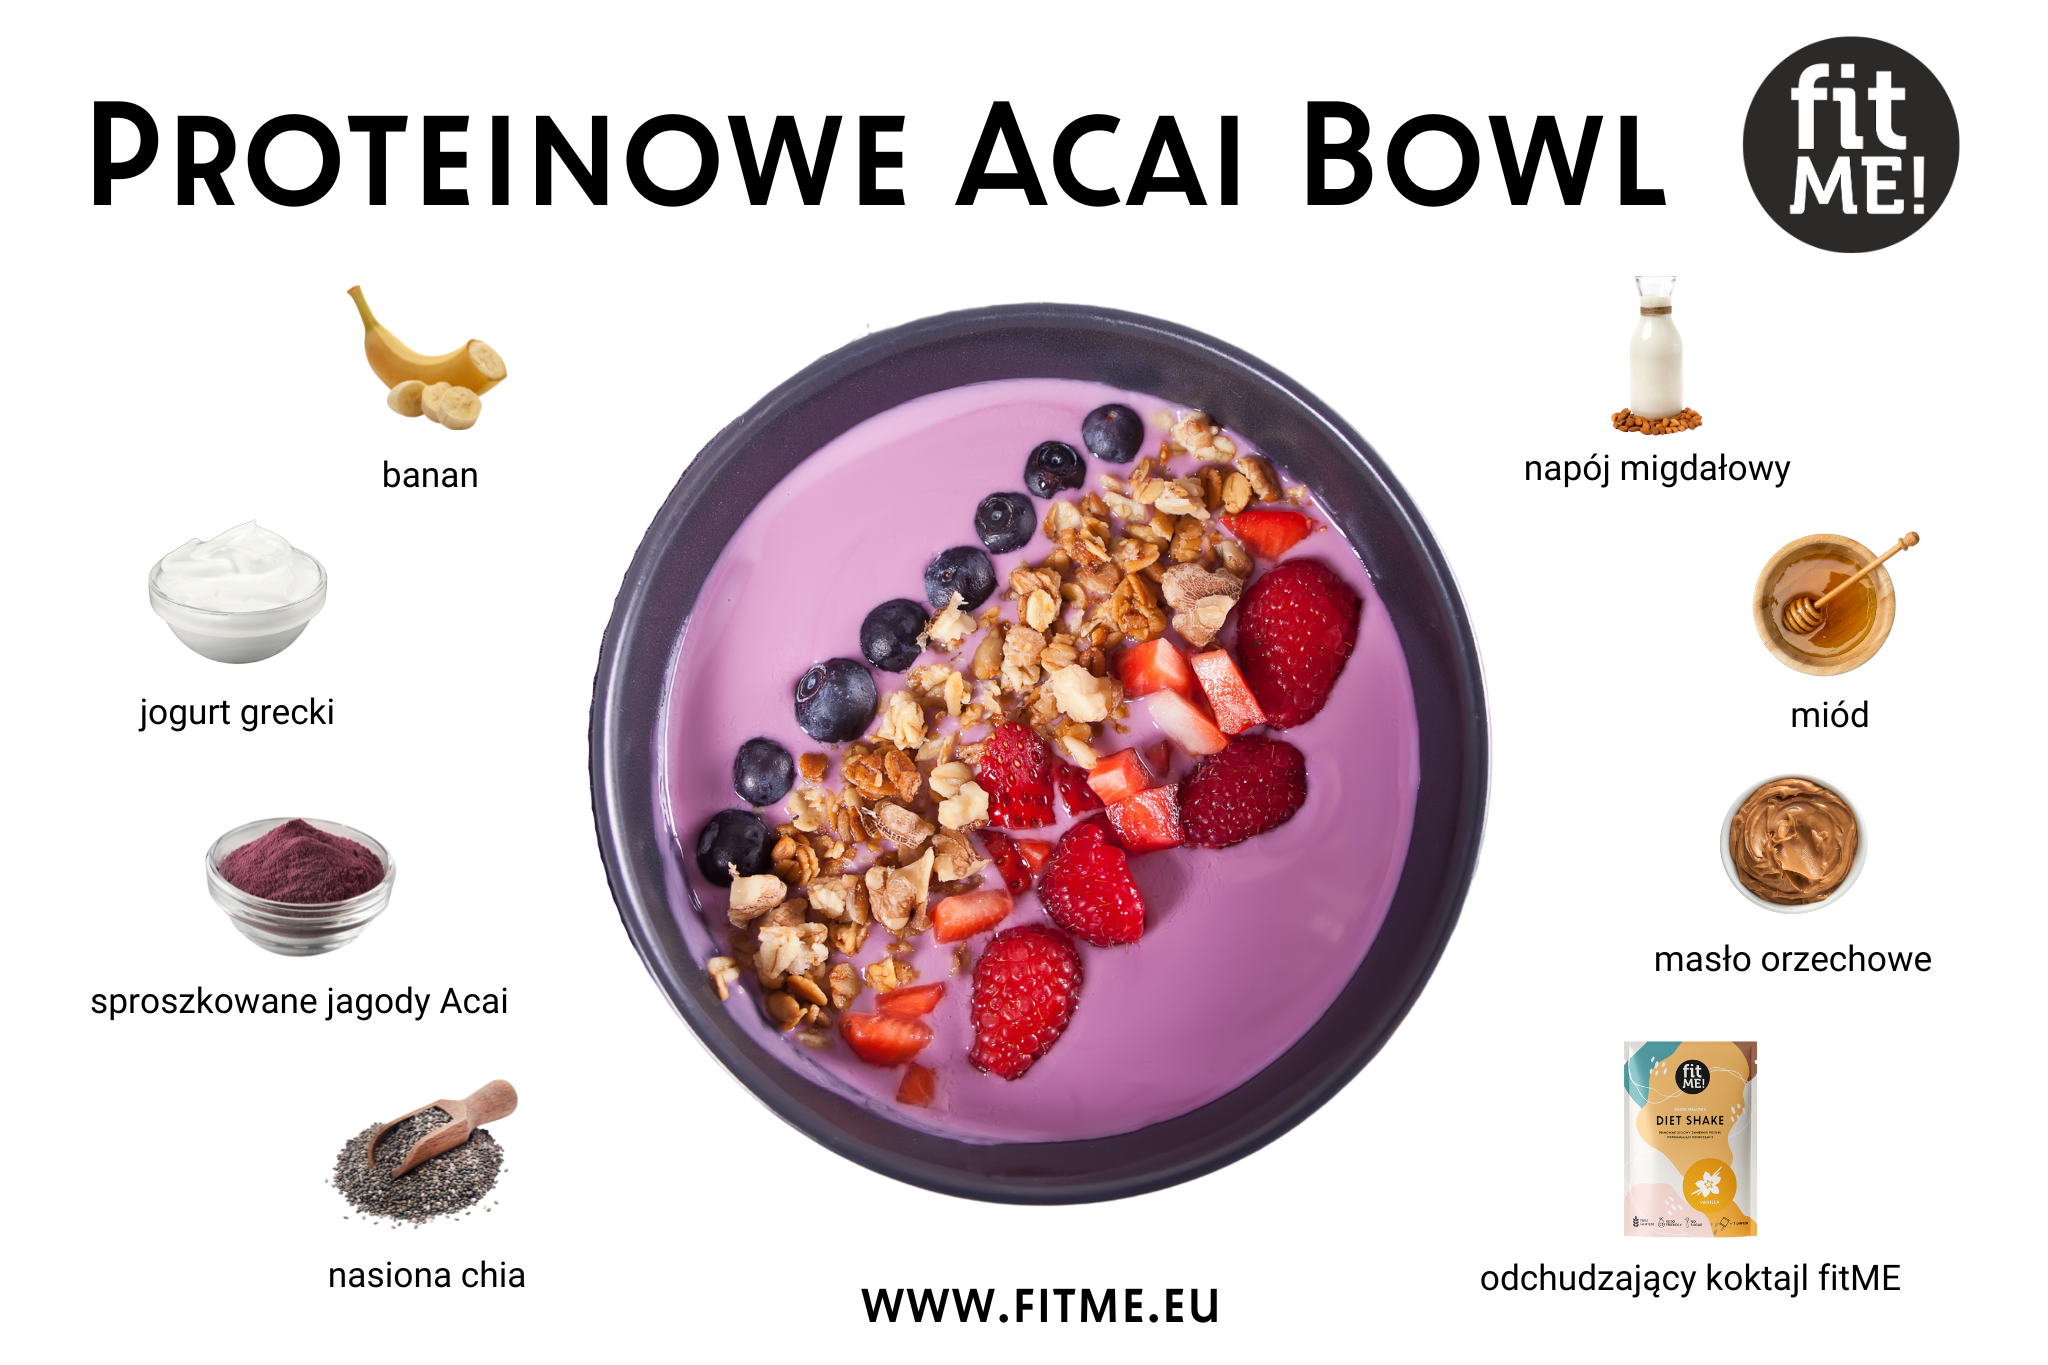 Proteinowe Acai Bowl to doskonały sposób na zaczęcie dnia pełnym energii i dostarczenie organizmowi wartościowego białka. Głównym składnikiem tego zdrowego dania jest sproszkowane Acai, które nie tylko wzbogaca bowl o antyoksydanty, ale również dodaje charakterystyczny smak. Kombinacja dwóch łyżek Acai z jednym świeżym bananem tworzy bazę o kremowej konsystencji, a jednocześnie dostarcza niezbędnych składników odżywczych.